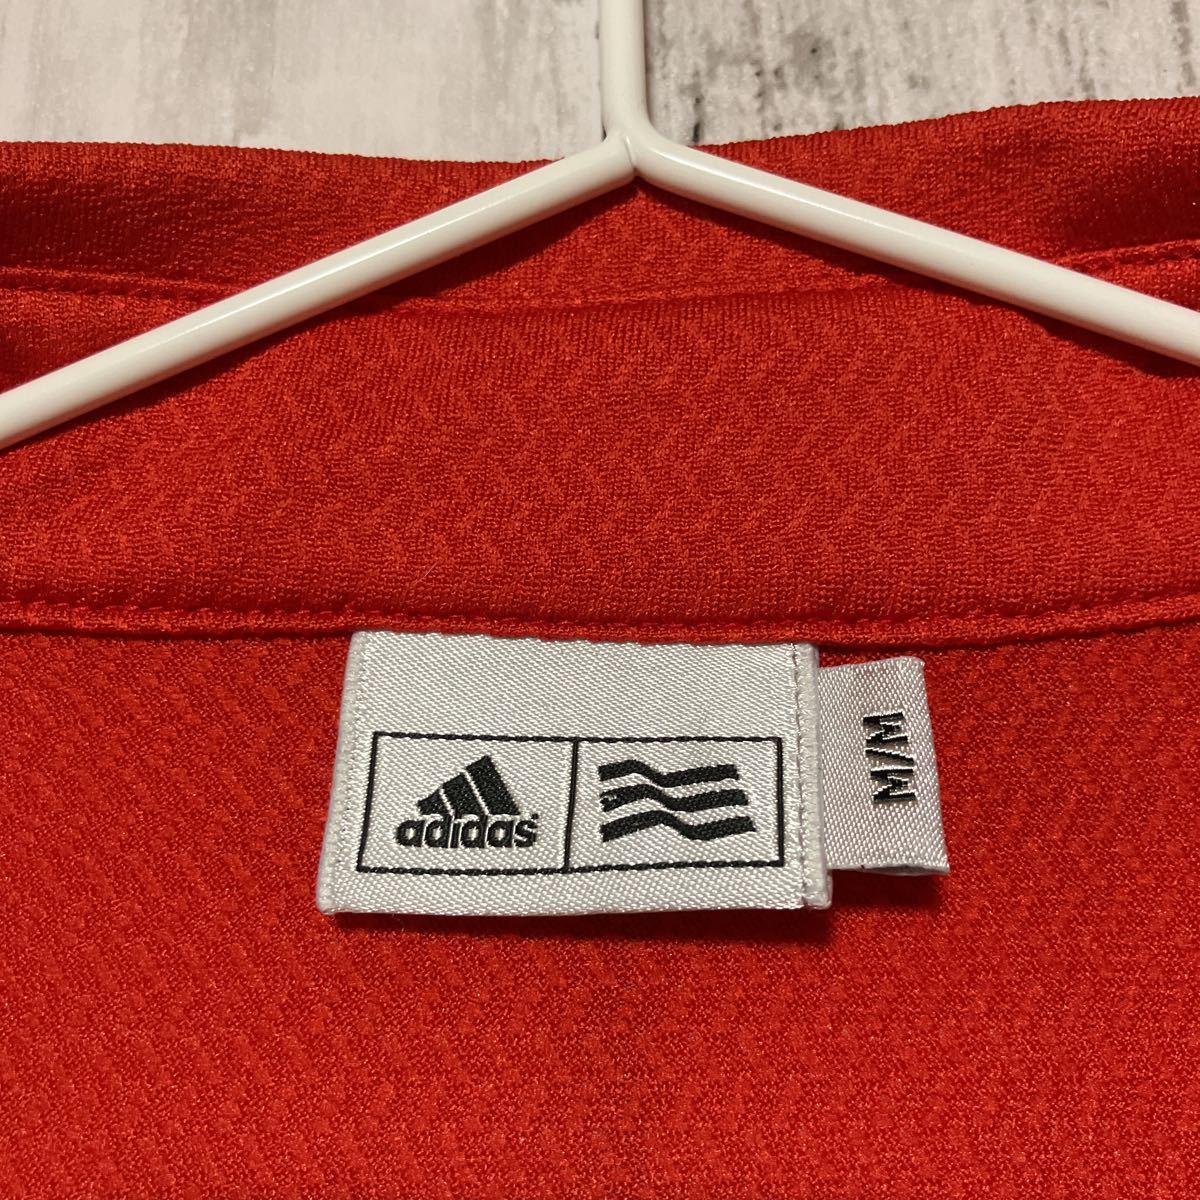 【adidas golf】アディダスゴルフ メンズ 半袖ハーフジップシャツ Mサイズ 赤 送料無料_画像5